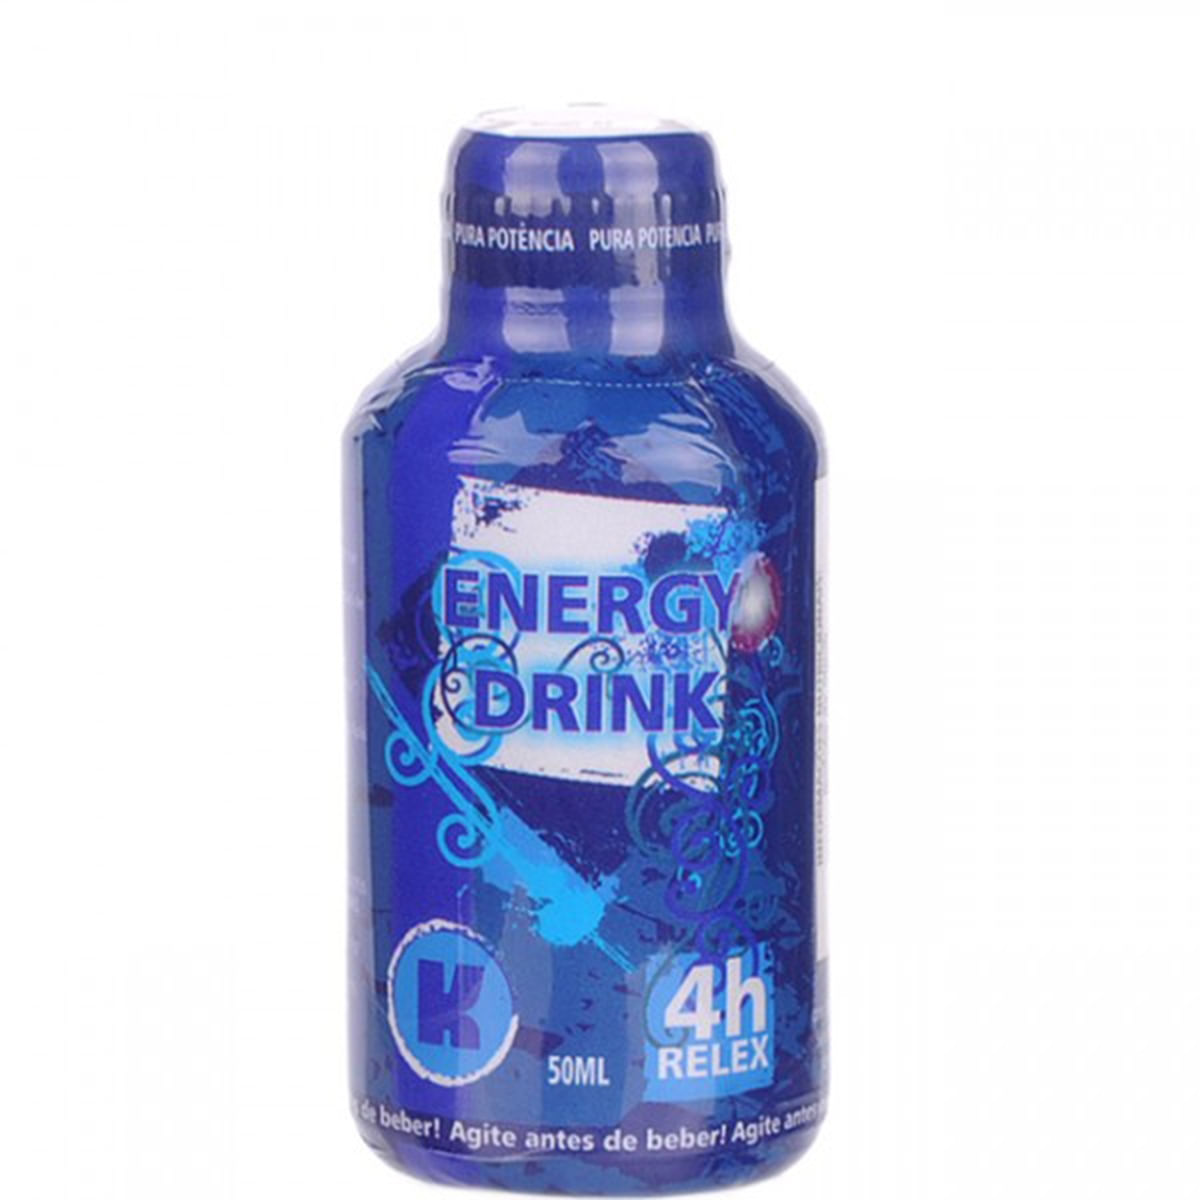 Energy Drink 4h Relex Afrodisíaco Pura Potencia 50ml